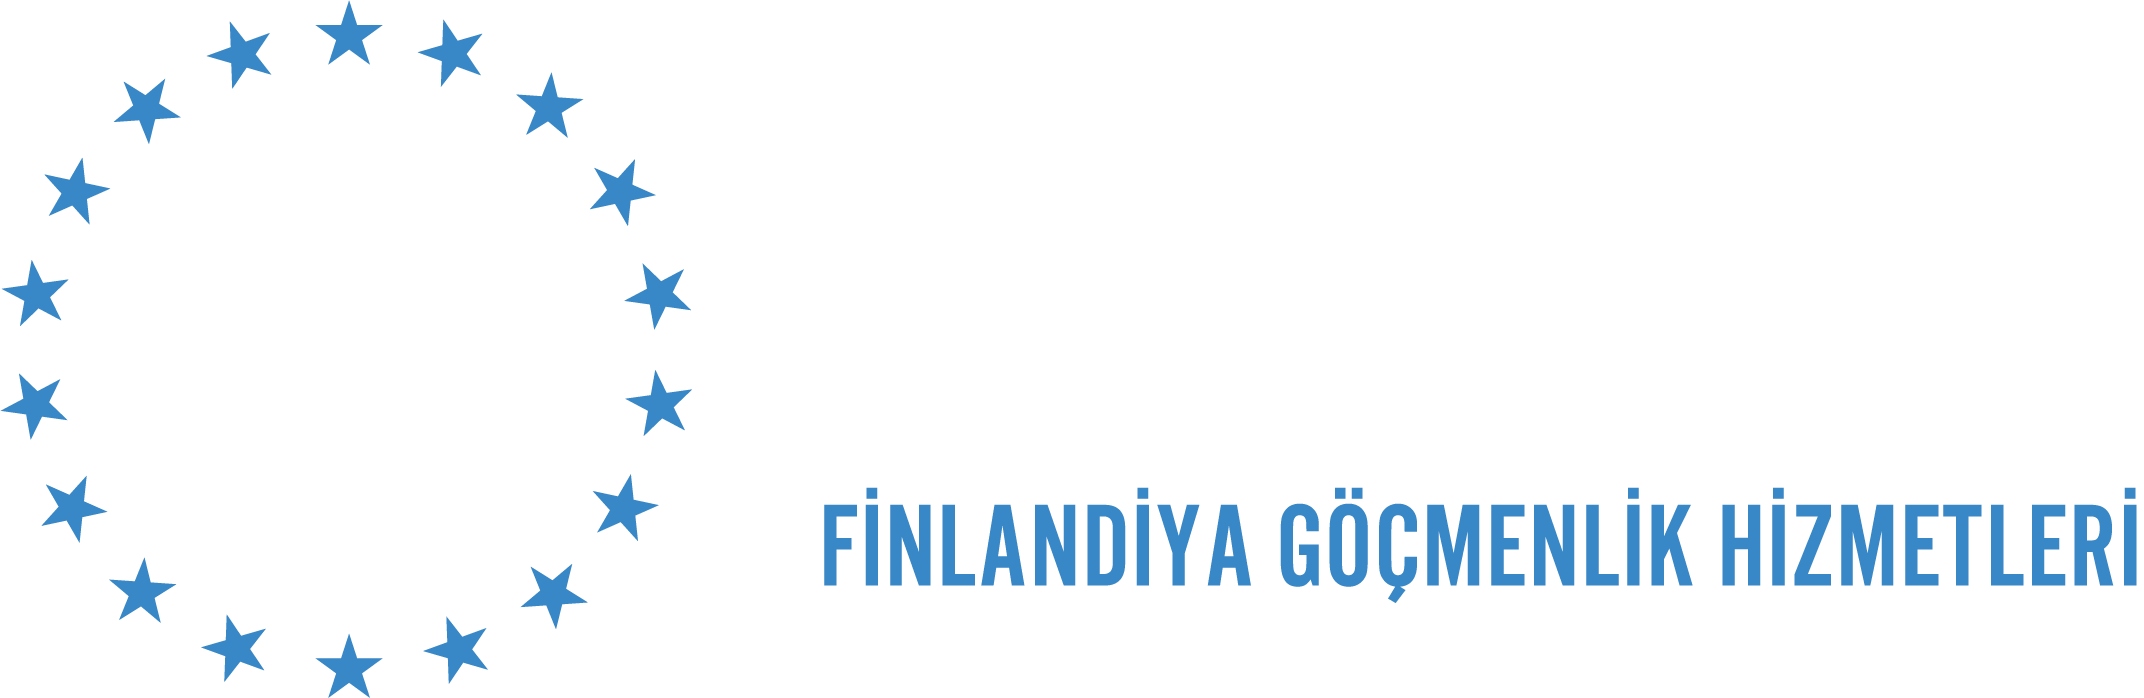 Finland Immıgration Services